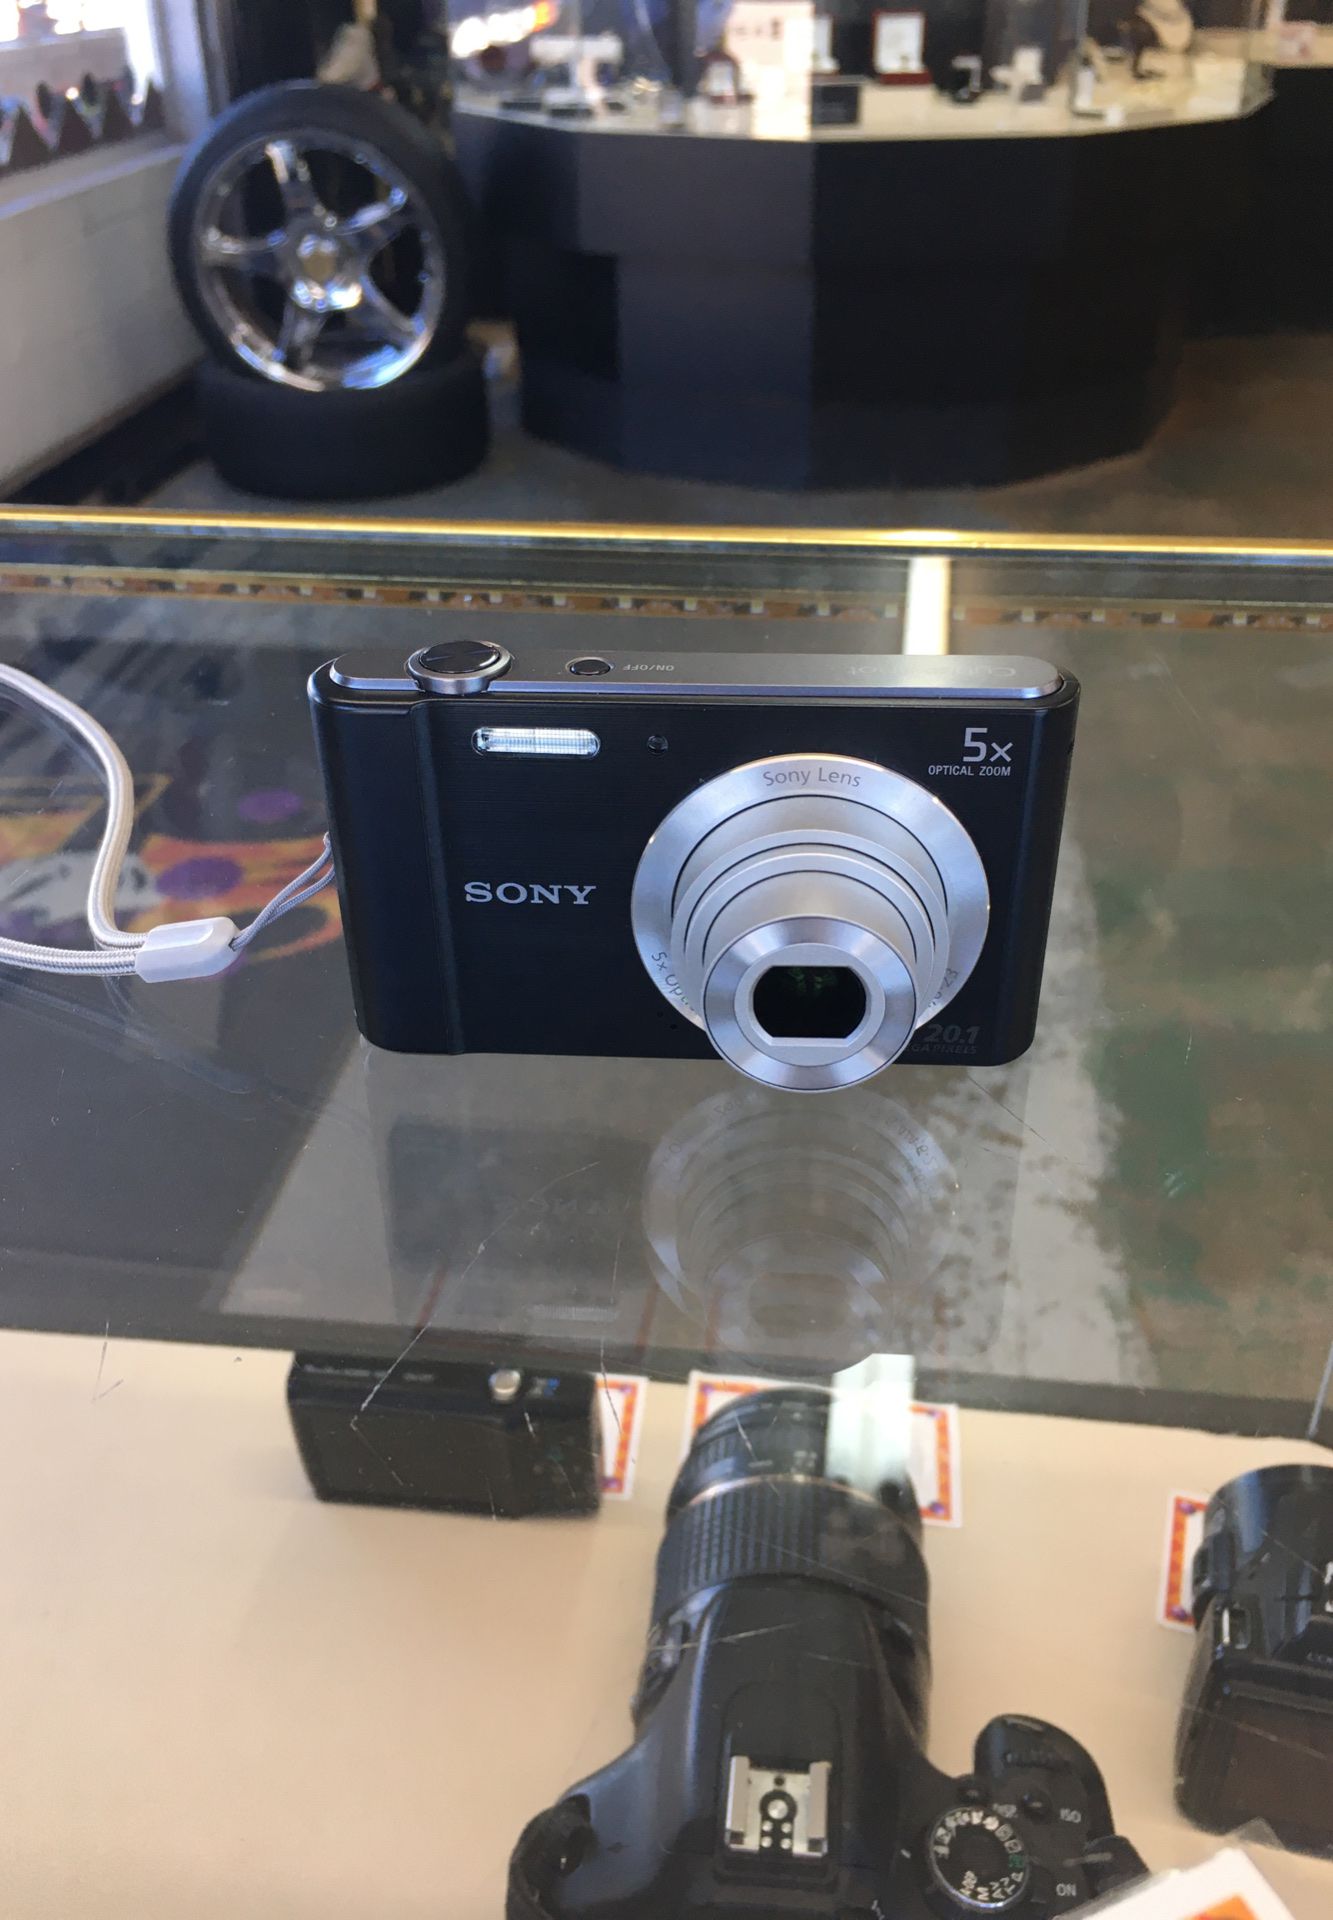 Sony DSC-W800 Digital Camera